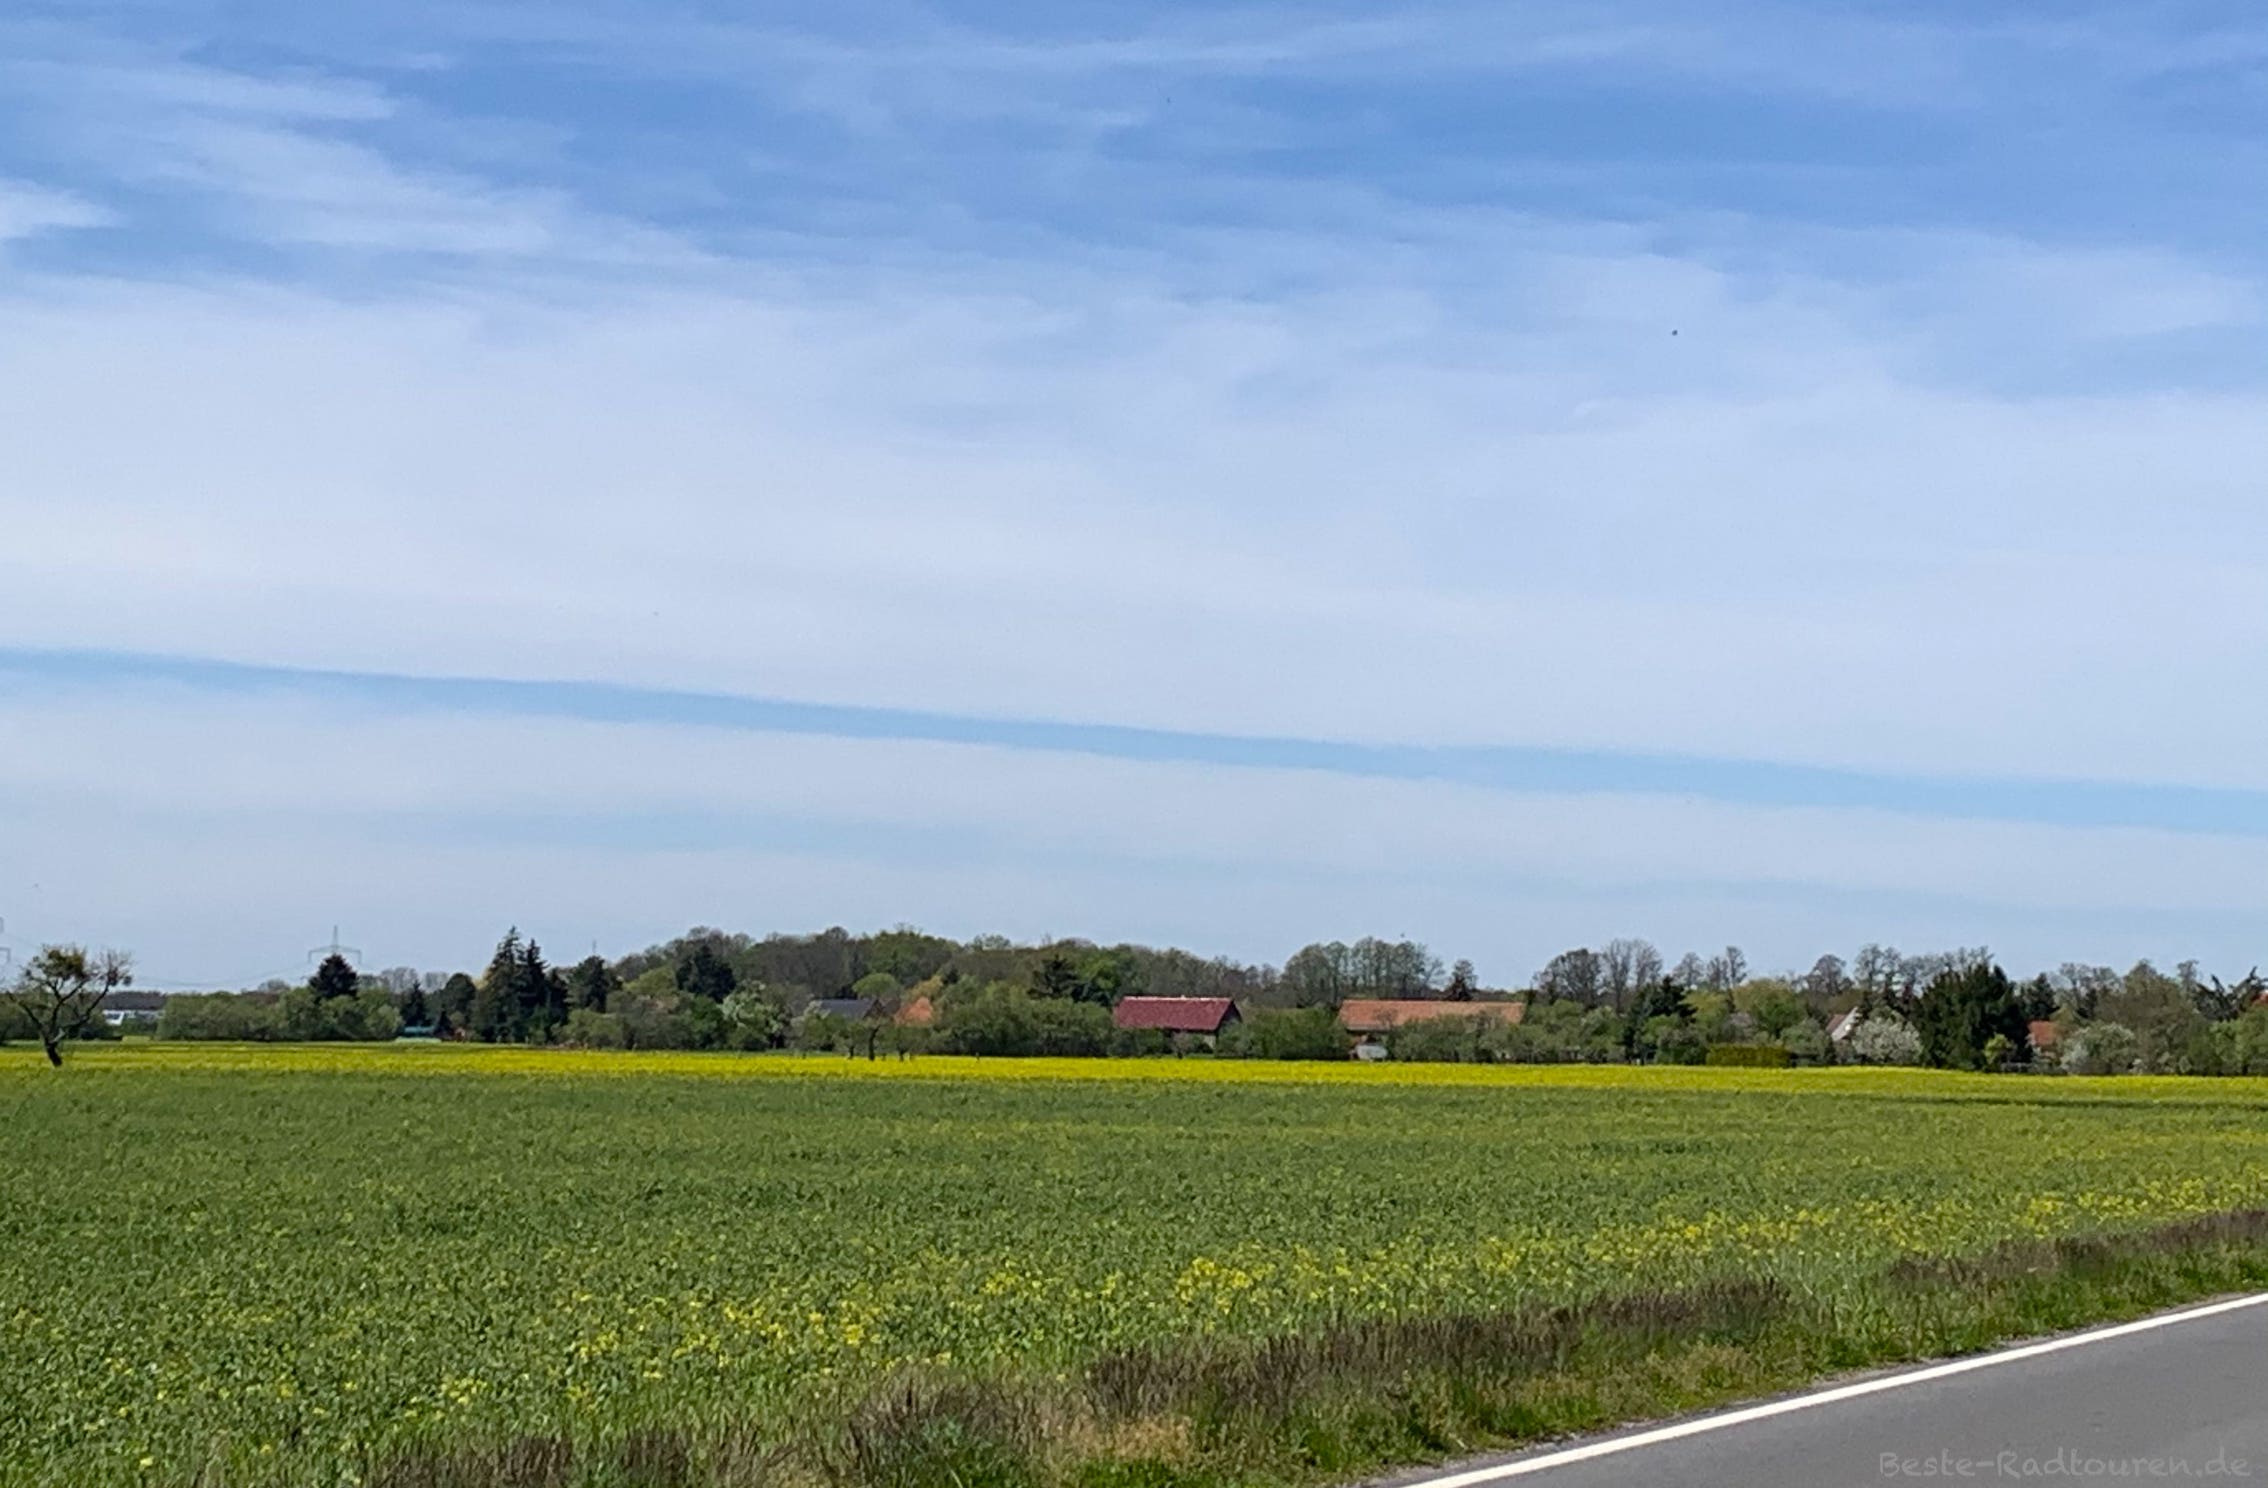 Foto vom Radweg aus: Landschaft zwischen Rietzneuendorf und Spreewaldring